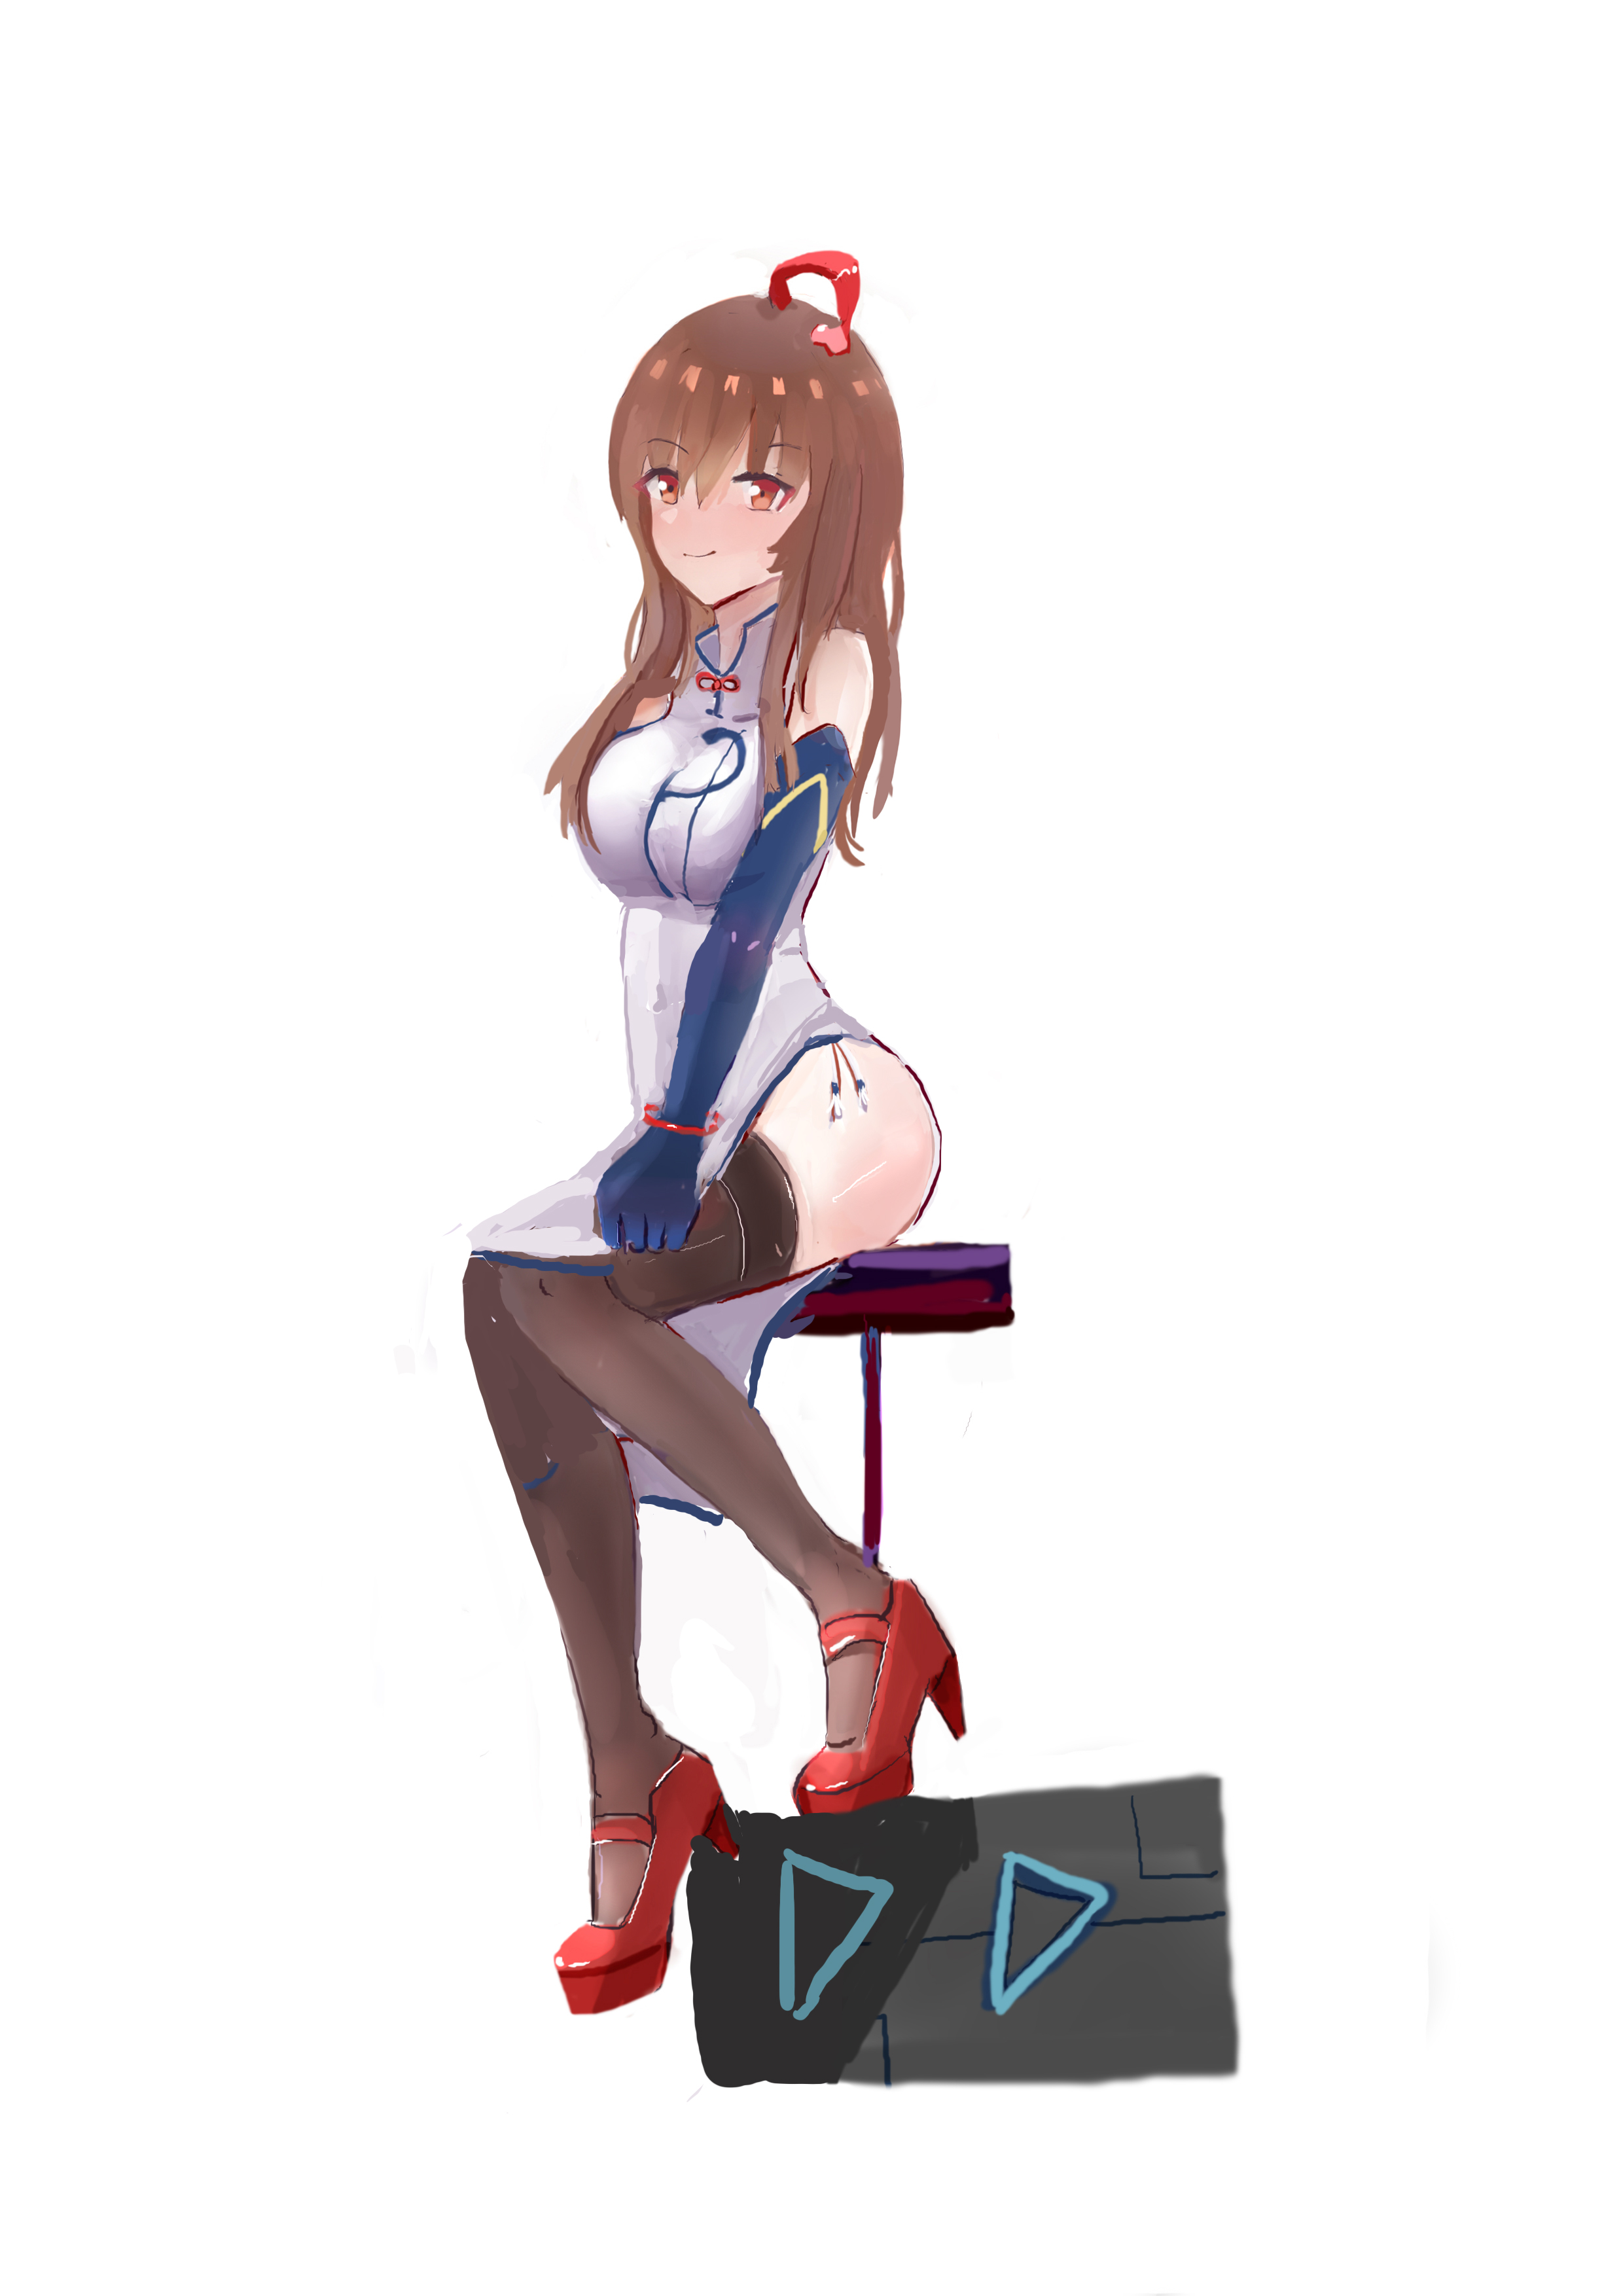 Anime Anime Girls Virtual Youtuber Shinka Musume Long Hair Brunette Artwork Digital Art Fan Art 2480x3508